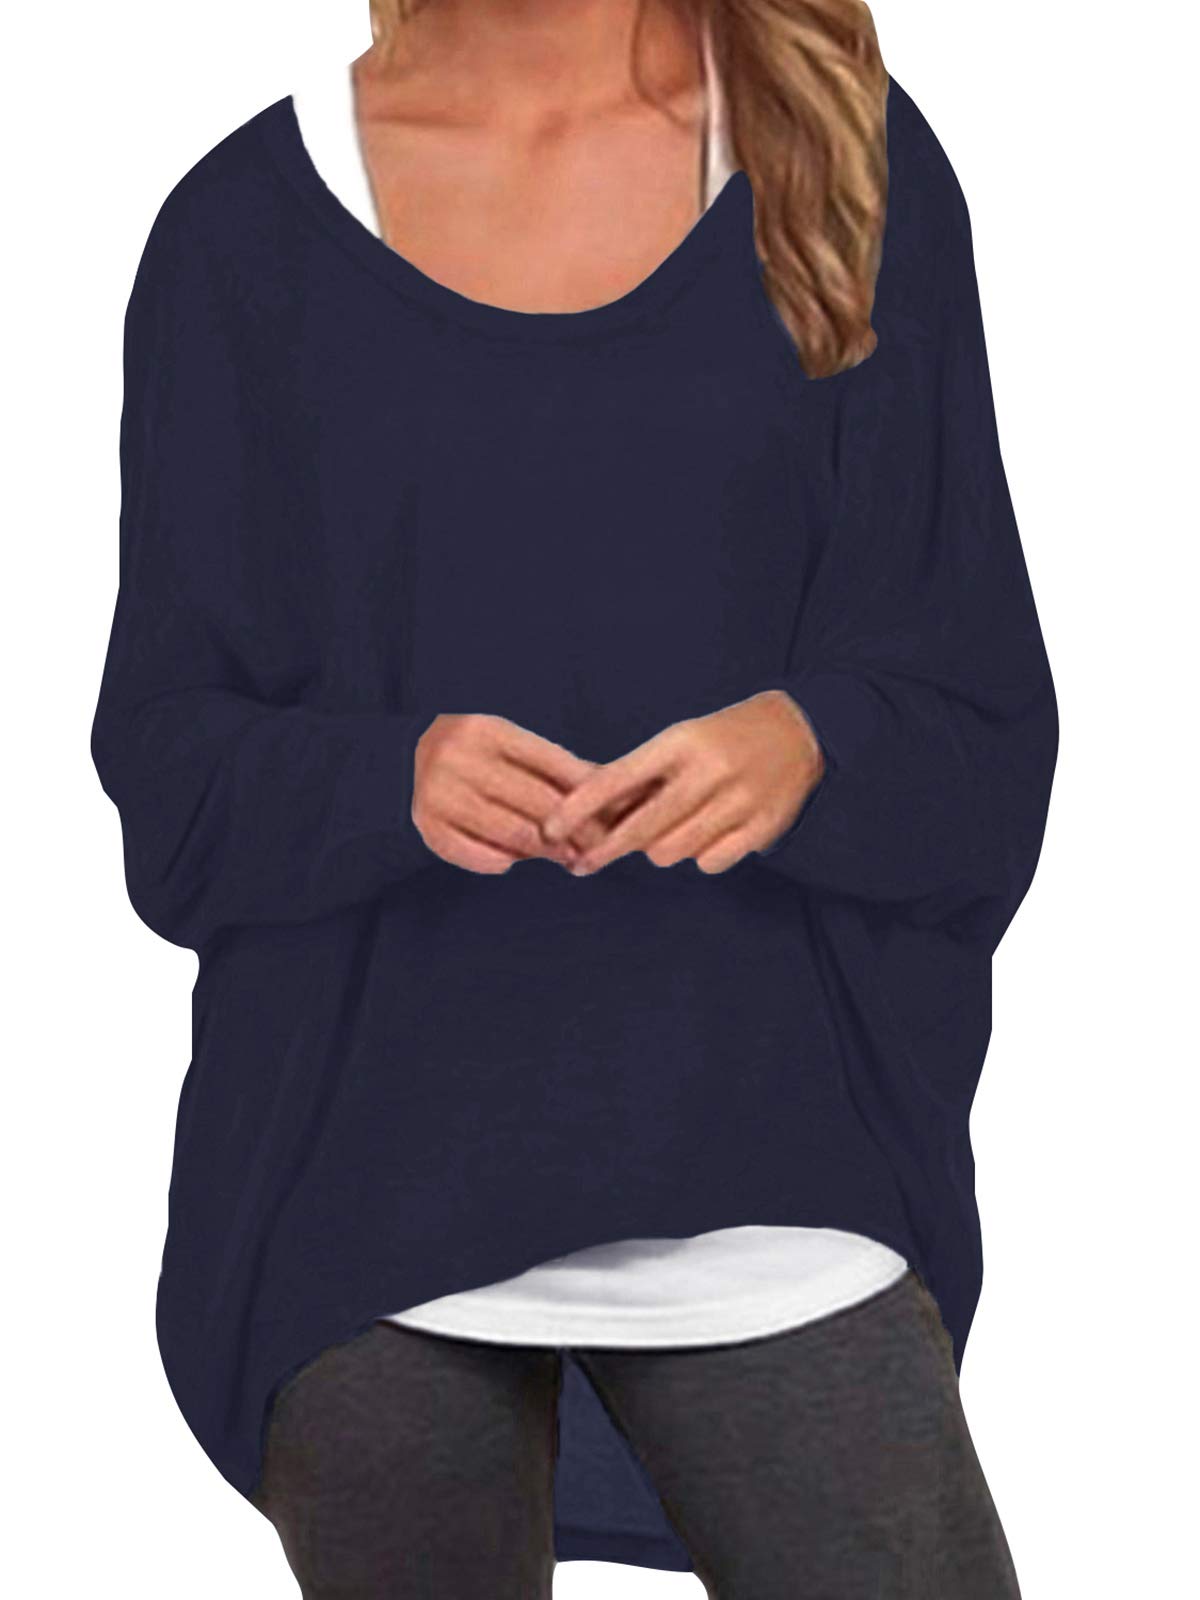 ZANZEA Damen Lose Asymmetrisch Jumper Sweatshirt Pullover Bluse Oberteile Oversize Tops Marine XL